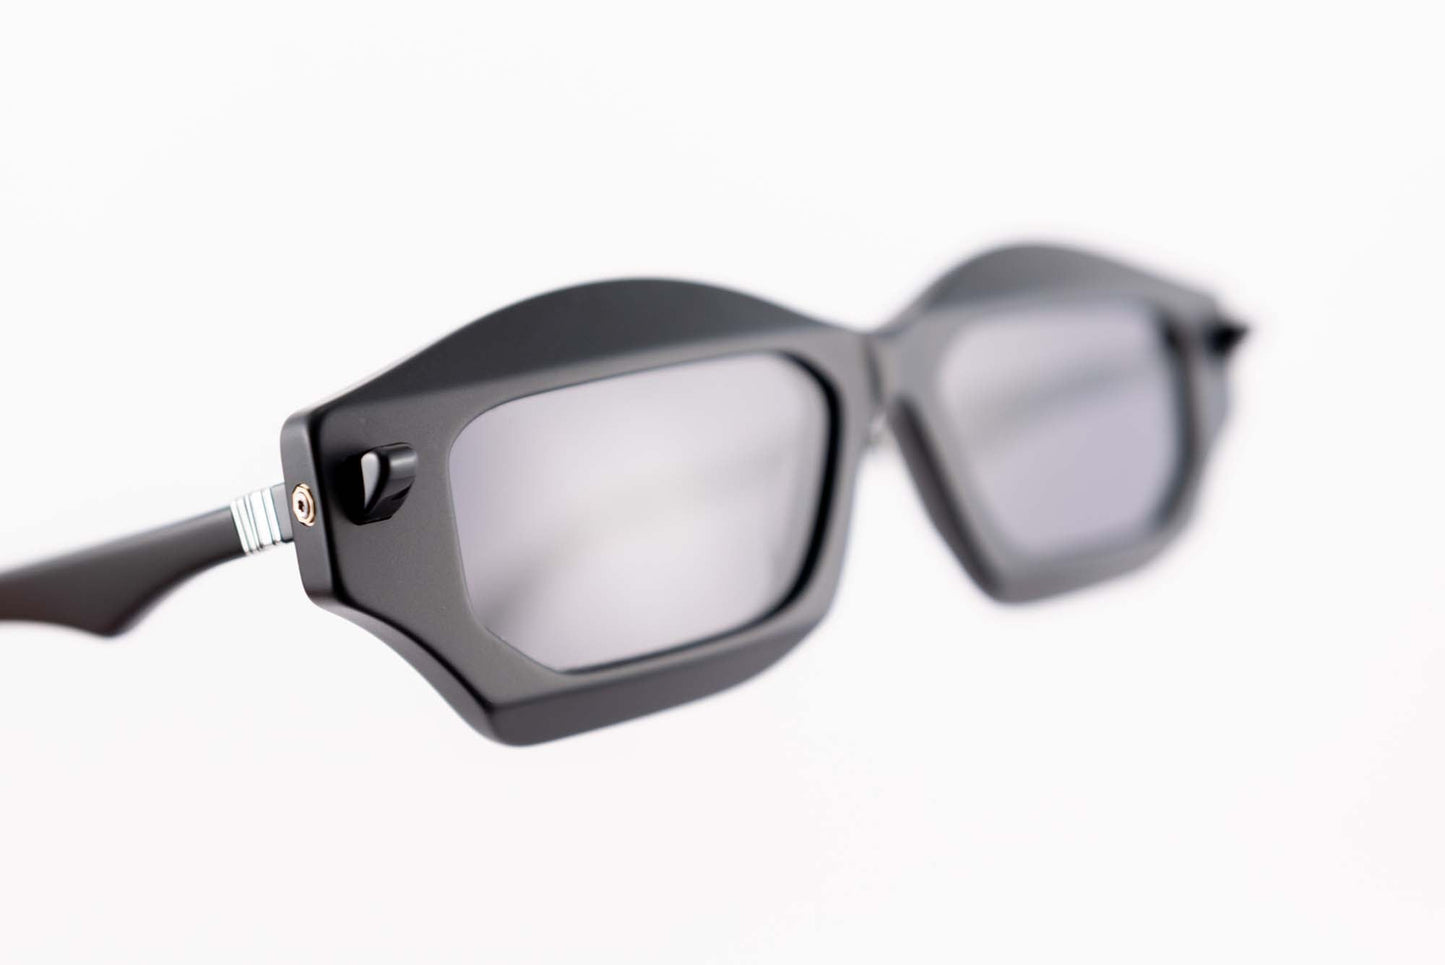 Kuboraum Occhiali da sole Nero / Acetato / poligonale Kuboraum MASKE Q6 BMM: occhiale in acetato nero poligonale da sole